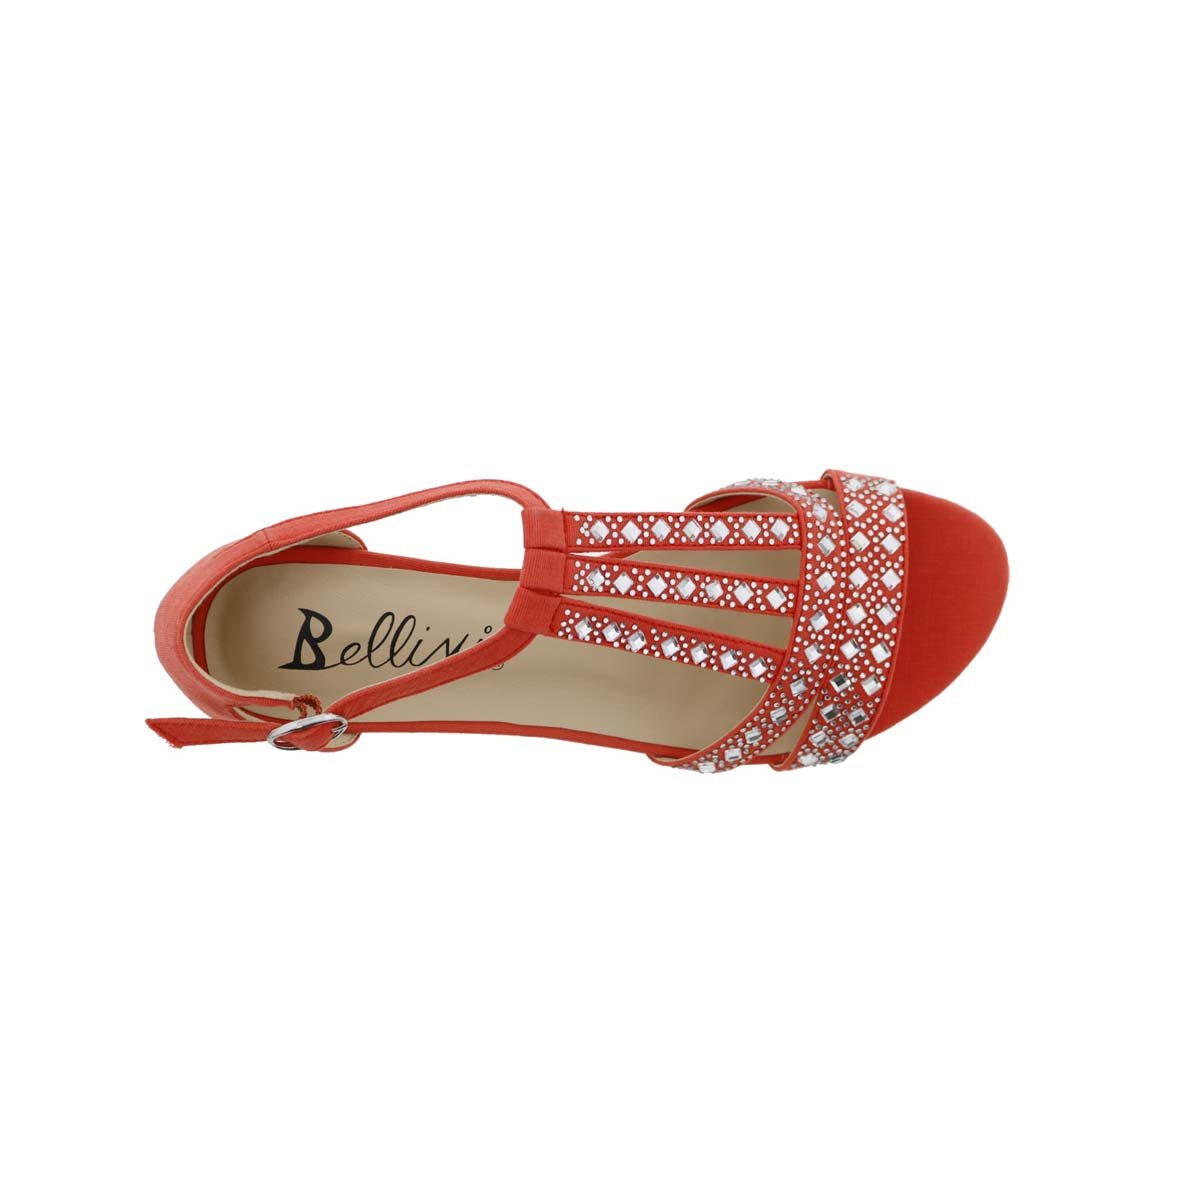 BELLINI LAARIS WOMEN WEDGE SANDALS IN ORANGE MICROSUEDE - TLW Shoes